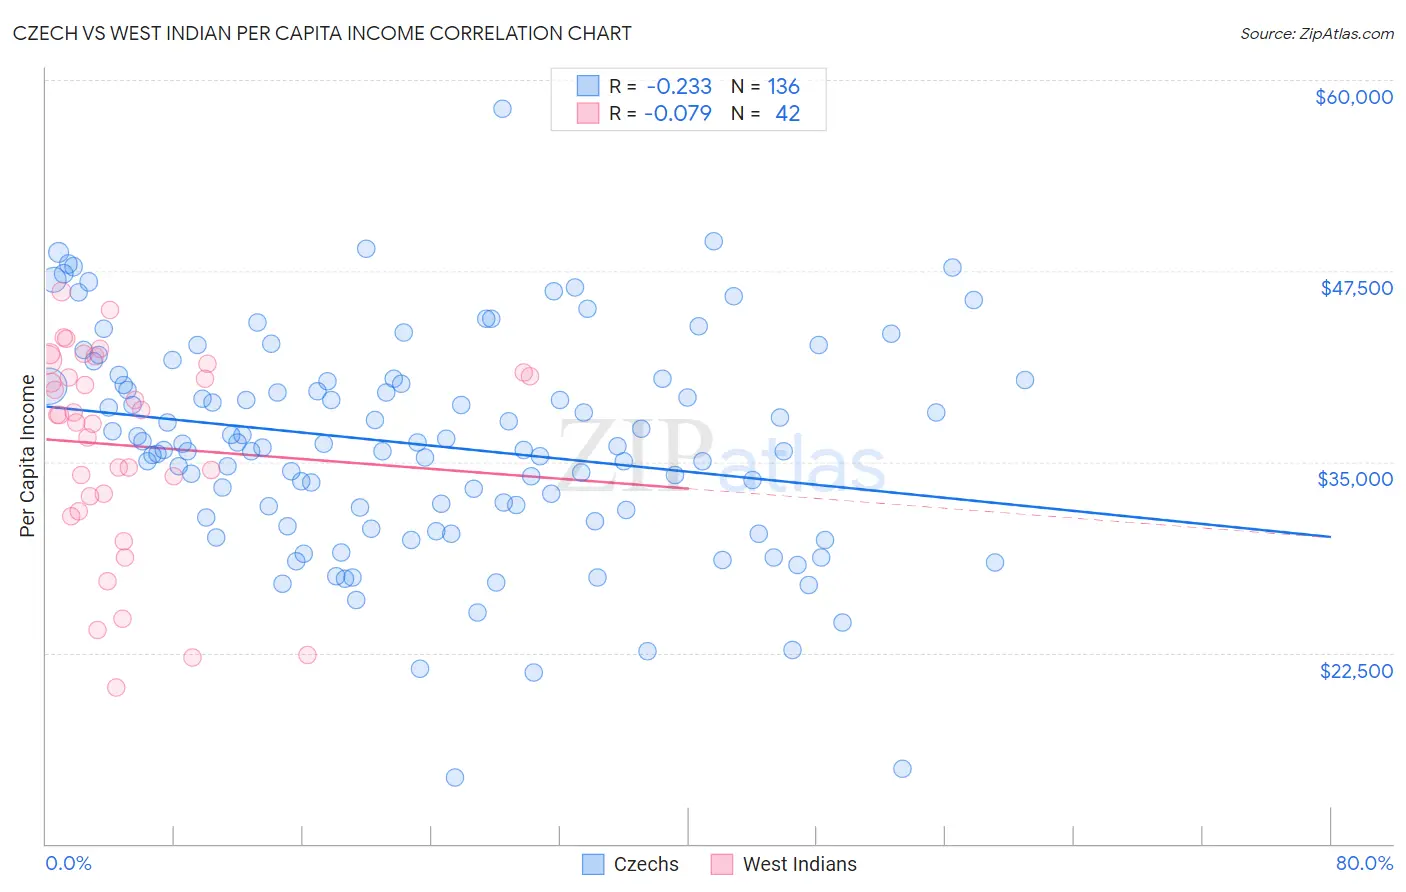 Czech vs West Indian Per Capita Income